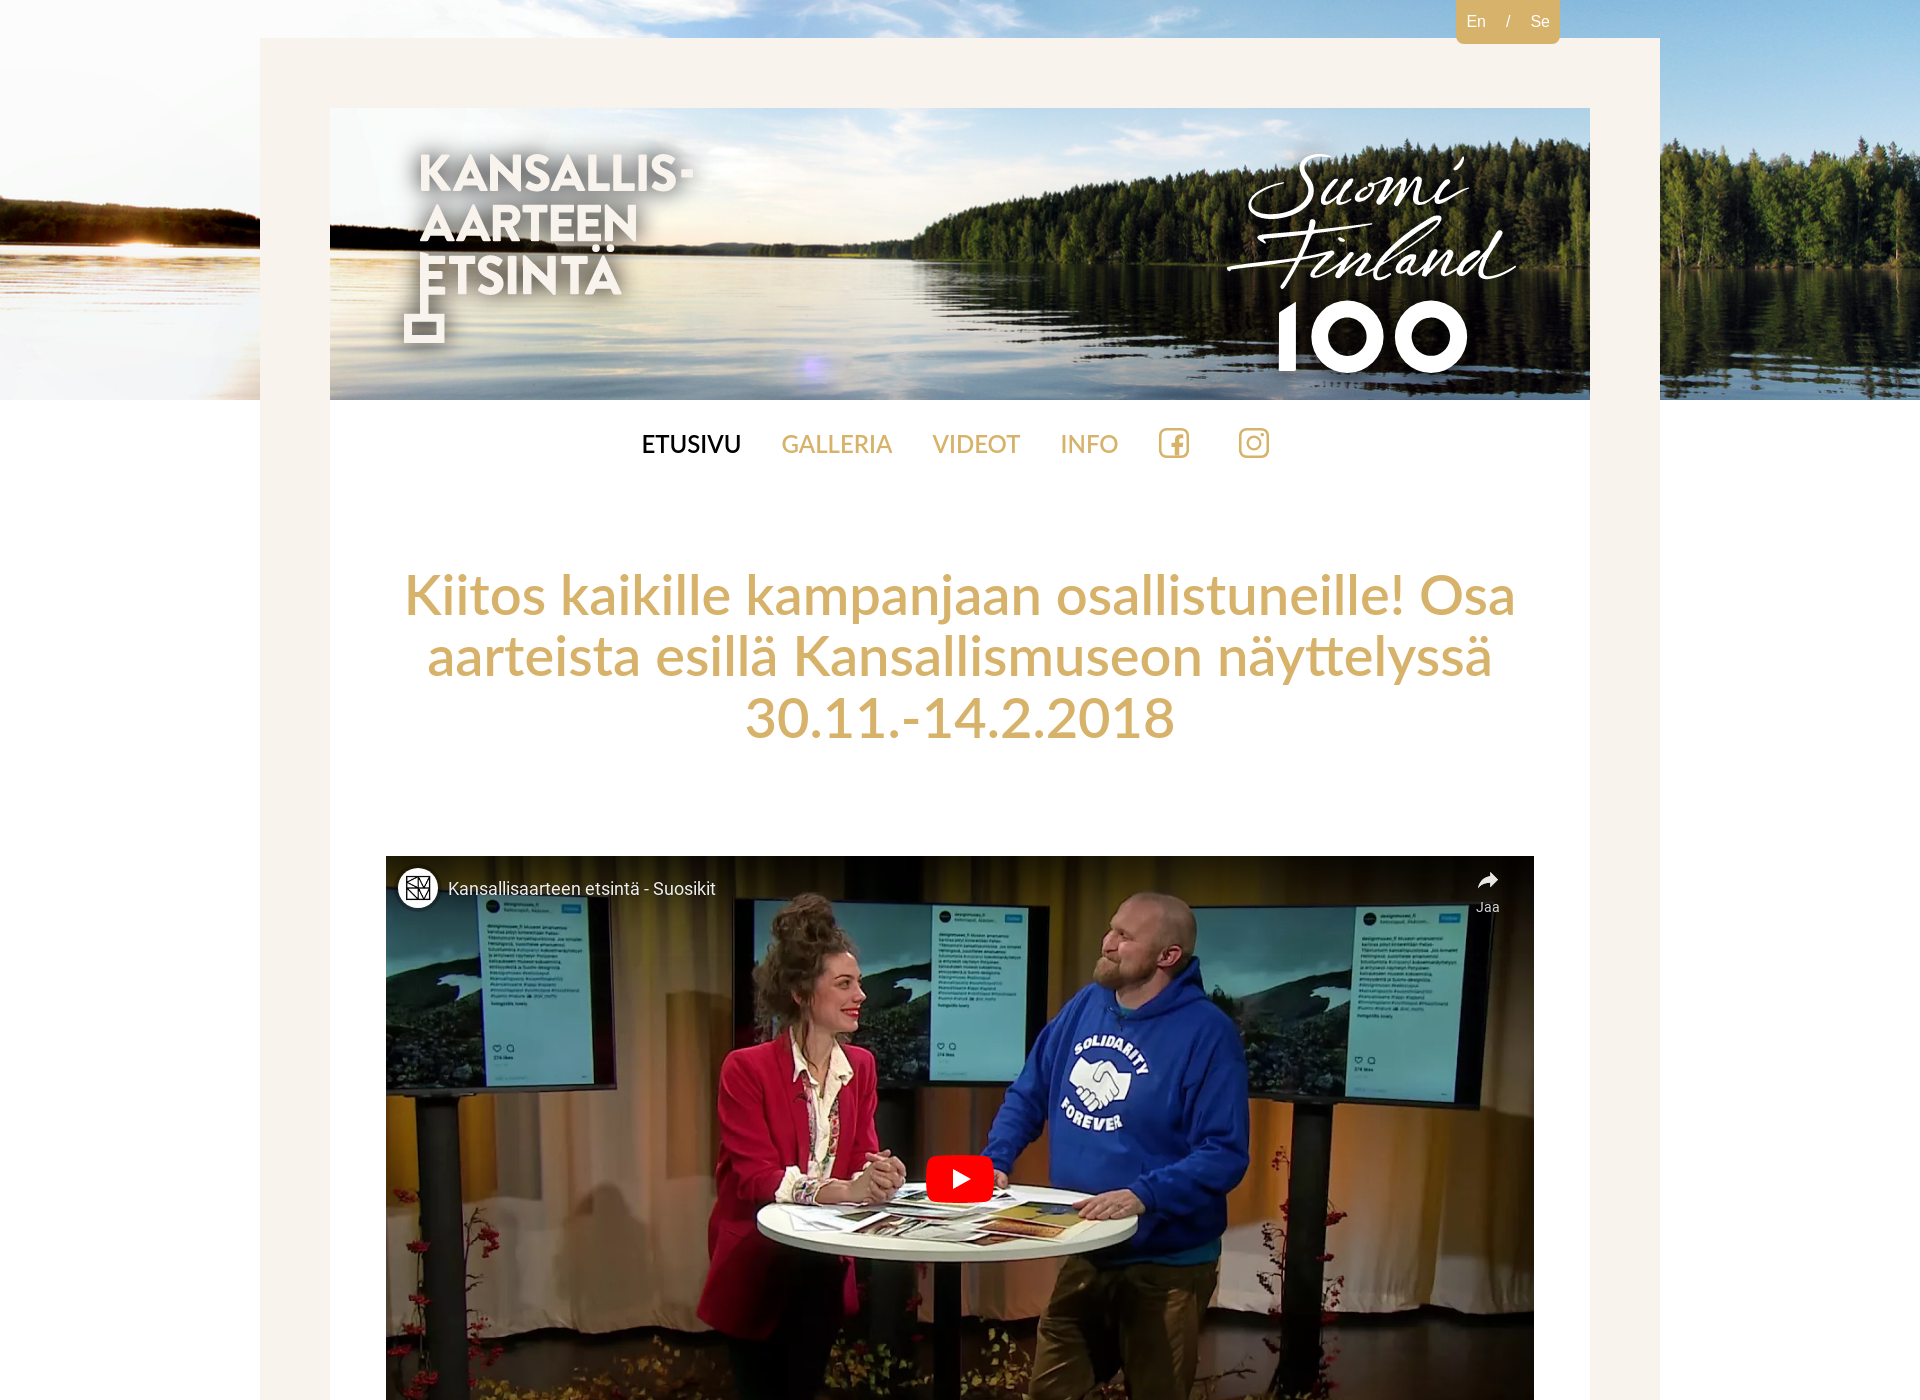 Näyttökuva kansallisaarteenetsinta.fi